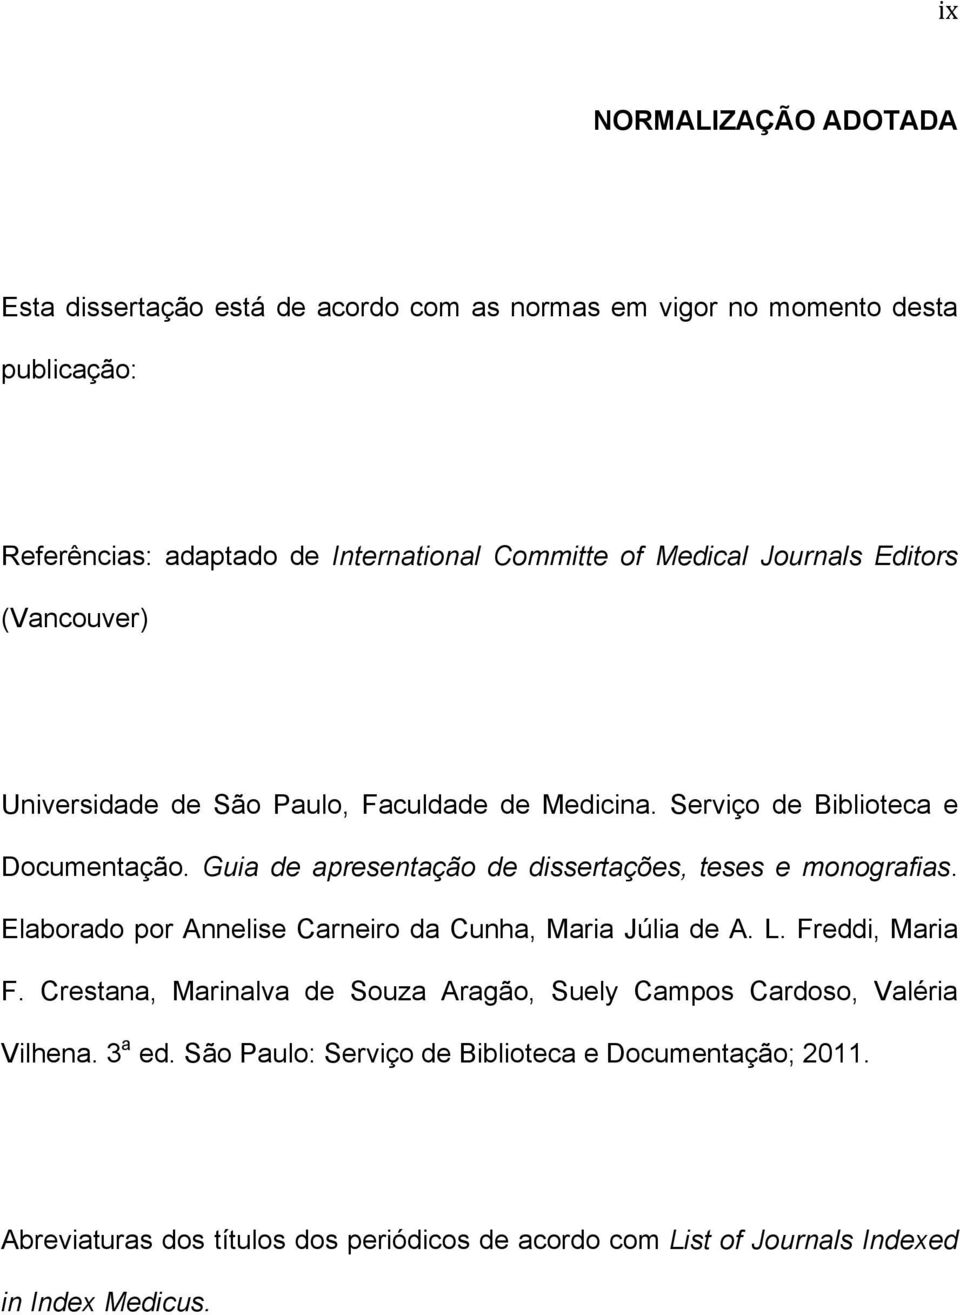 Guia de apresentação de dissertações, teses e monografias. Elaborado por Annelise Carneiro da Cunha, Maria Júlia de A. L. Freddi, Maria F.